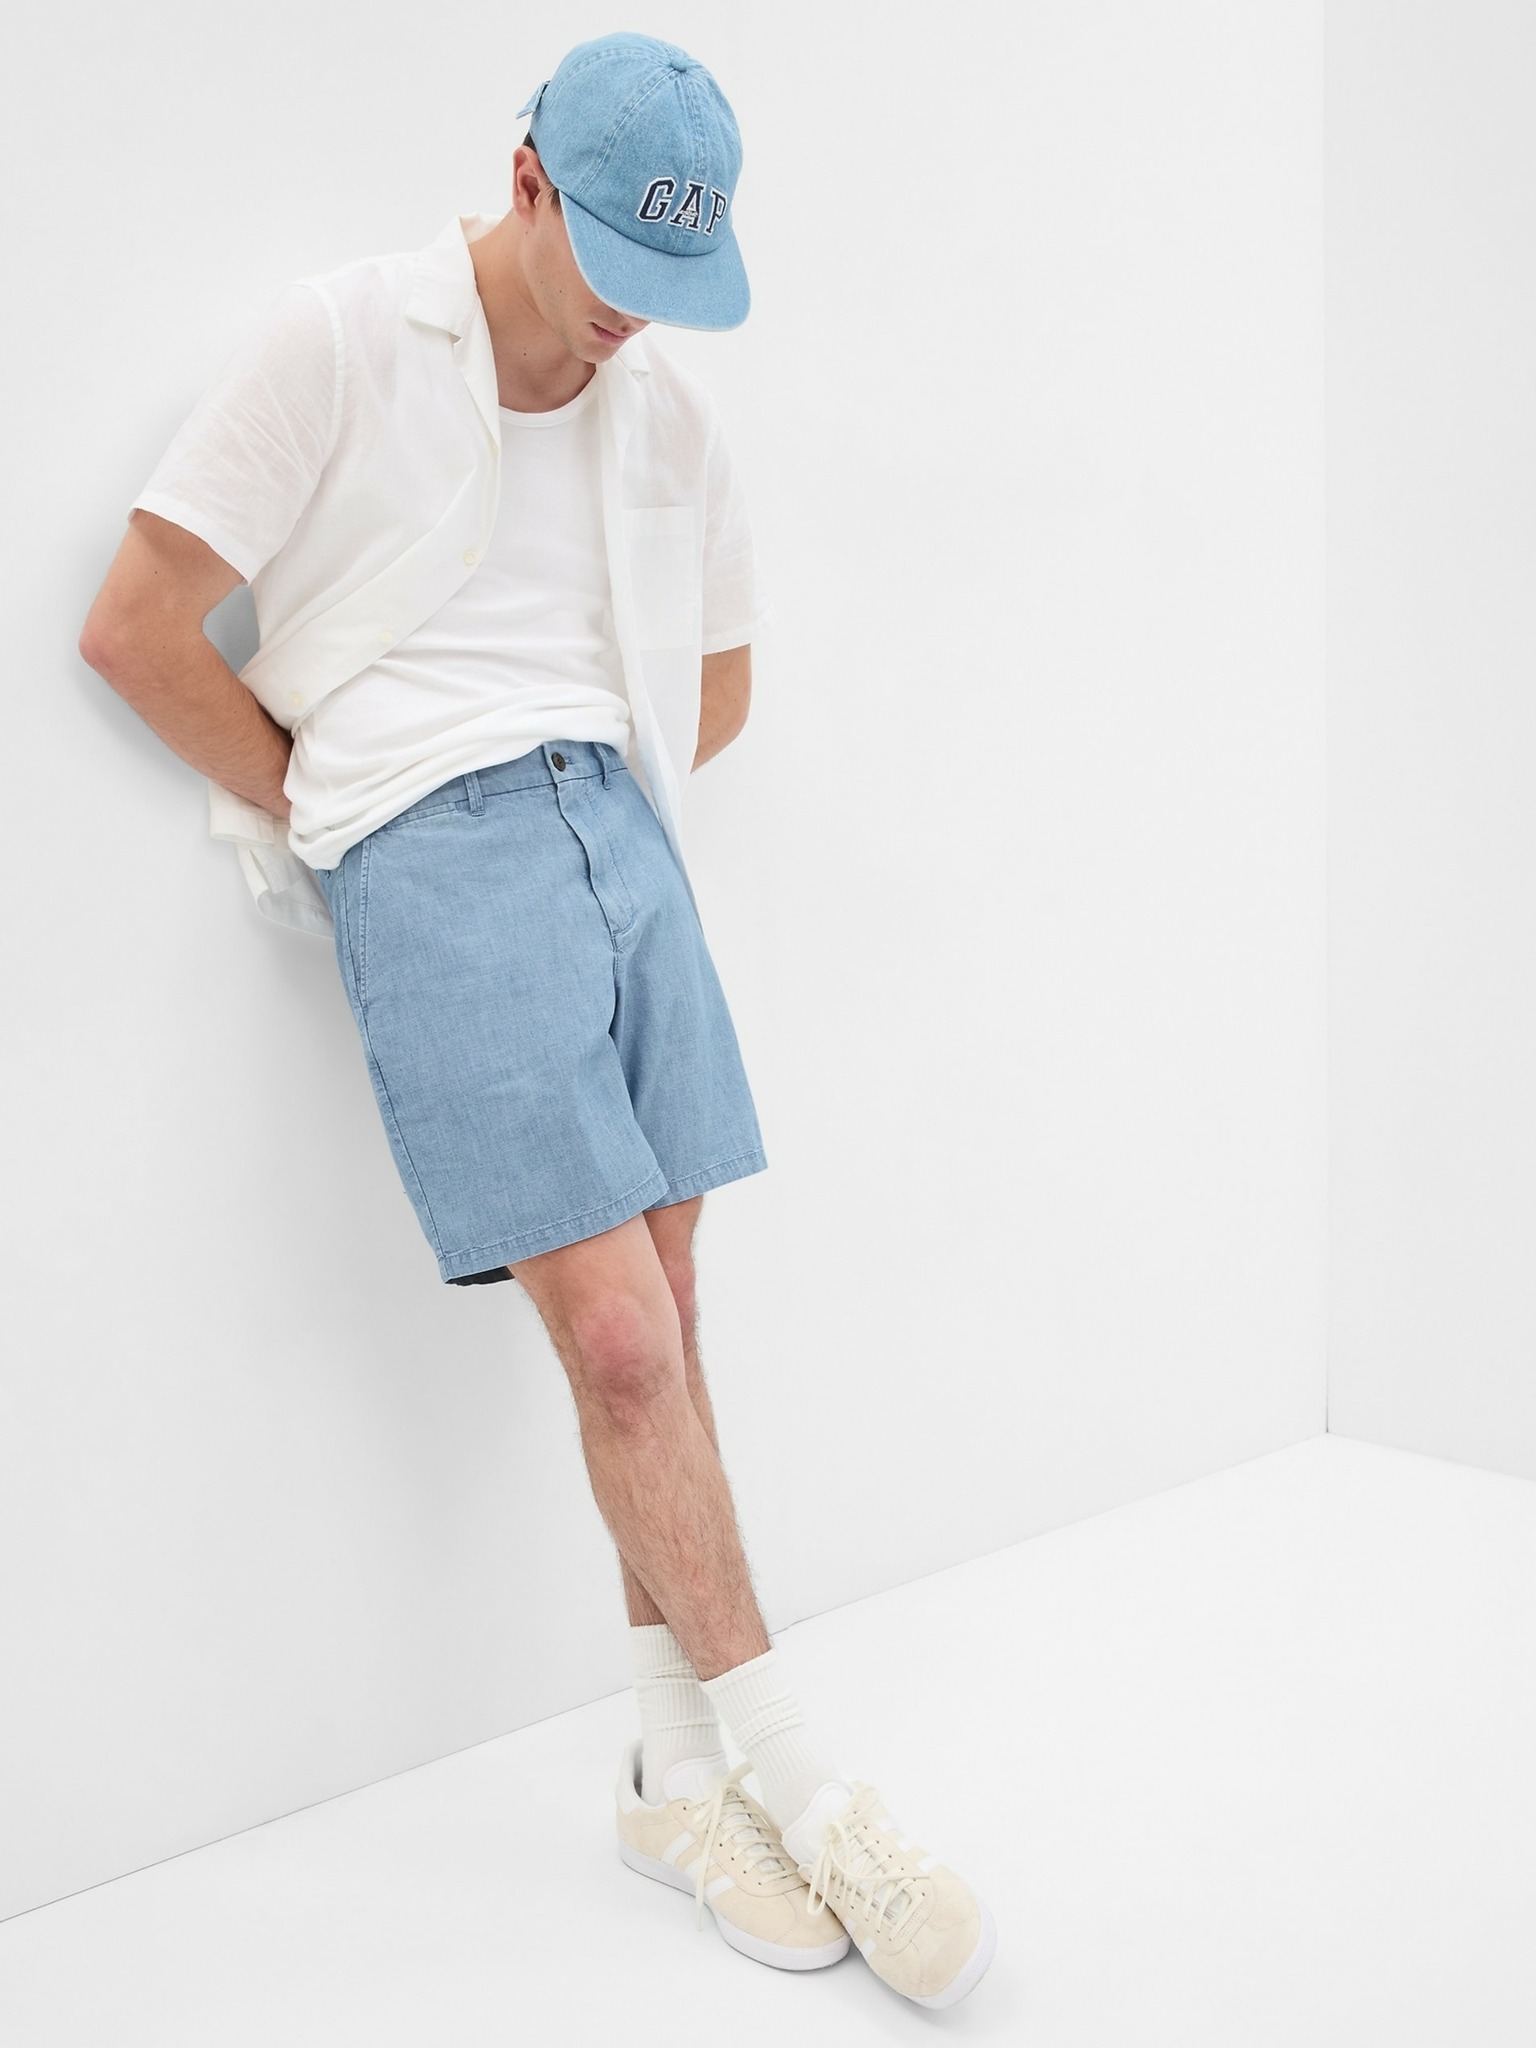 39 Men Short pants outfit ideas